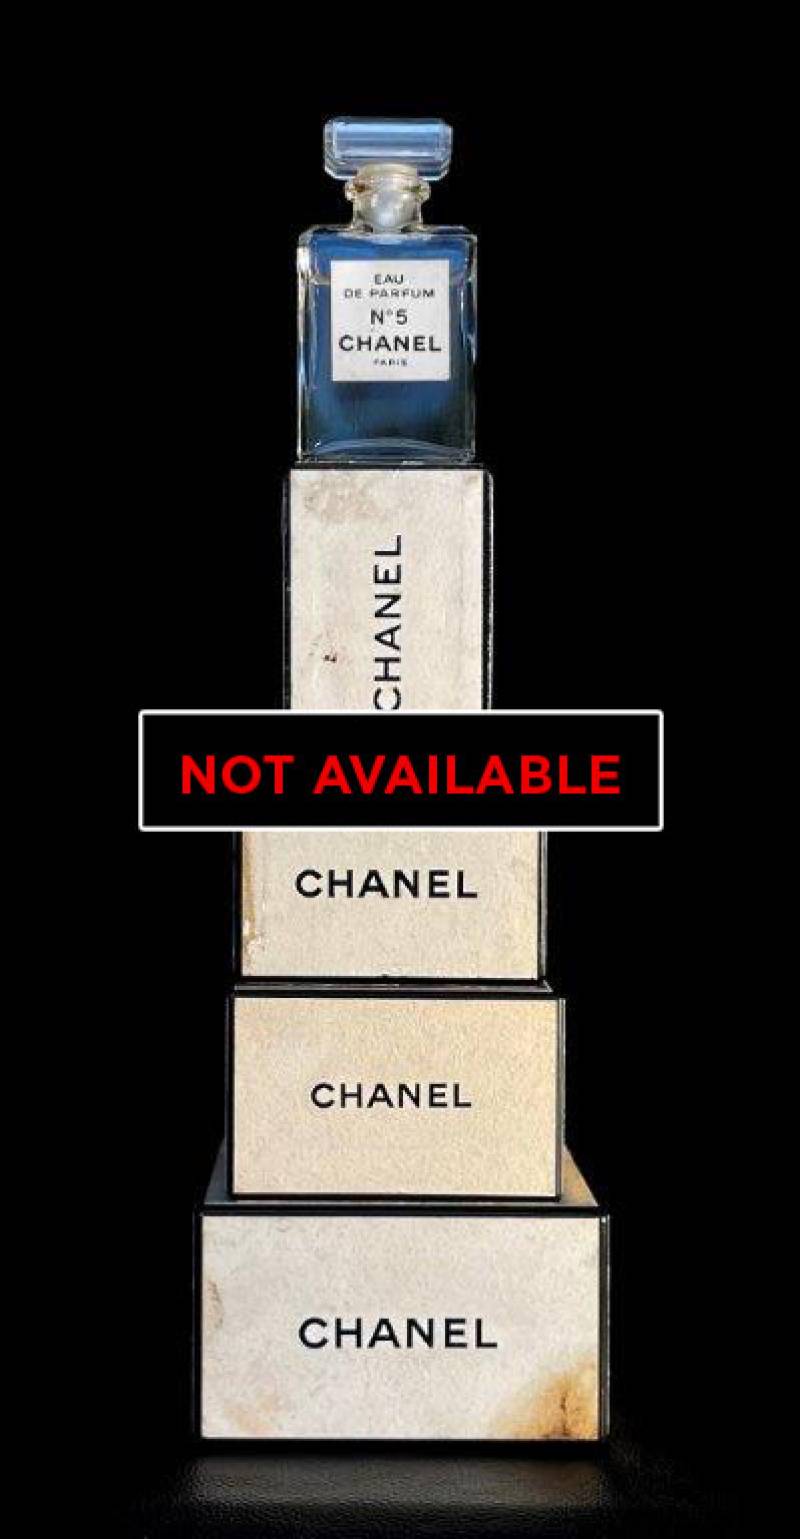 Chanel Art Collection 33 - Unique artwork